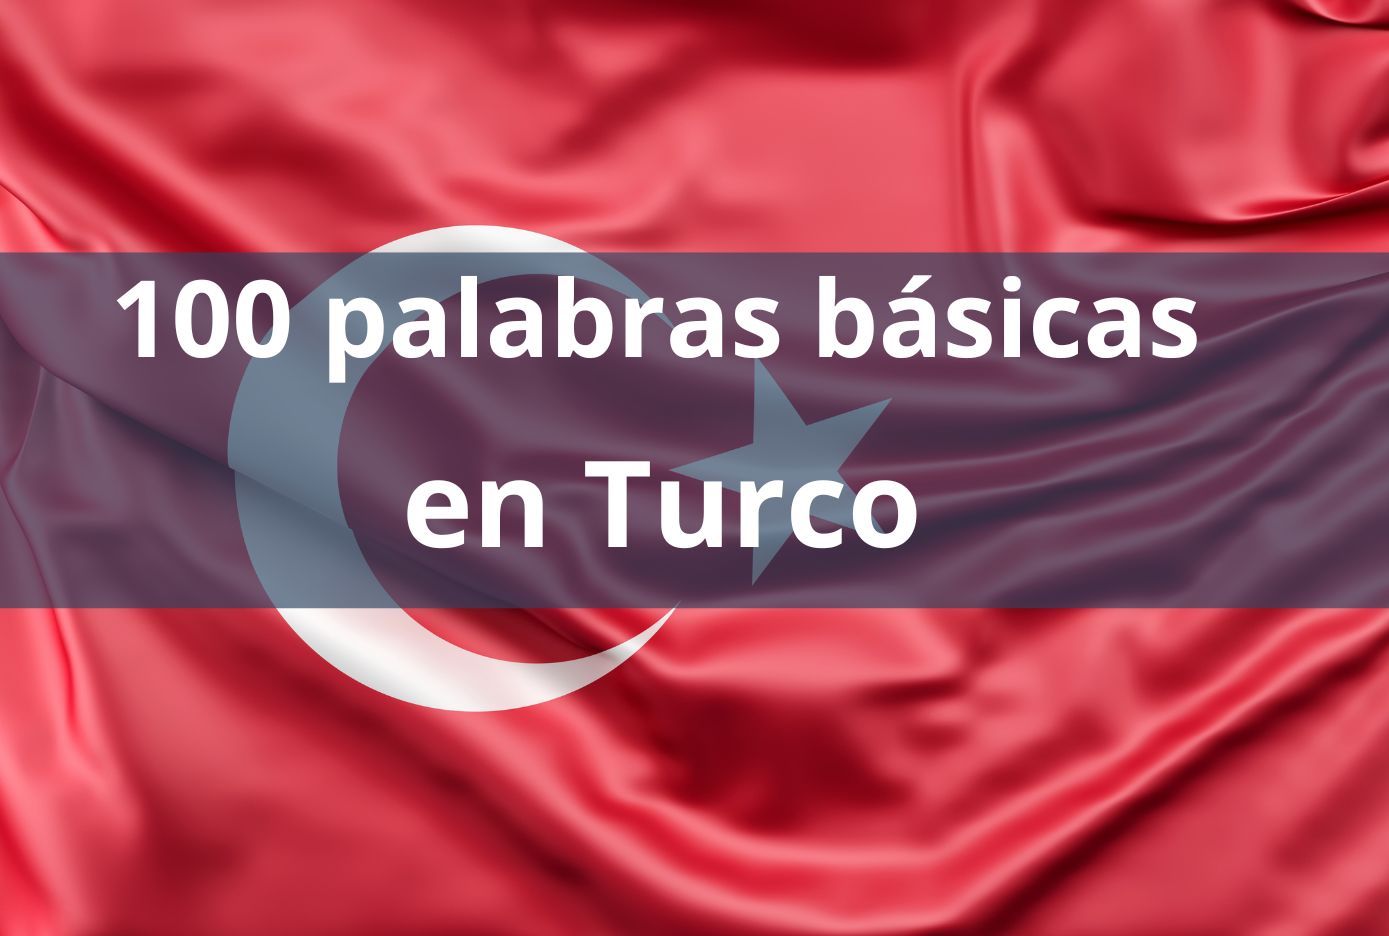 100 palabras en turco